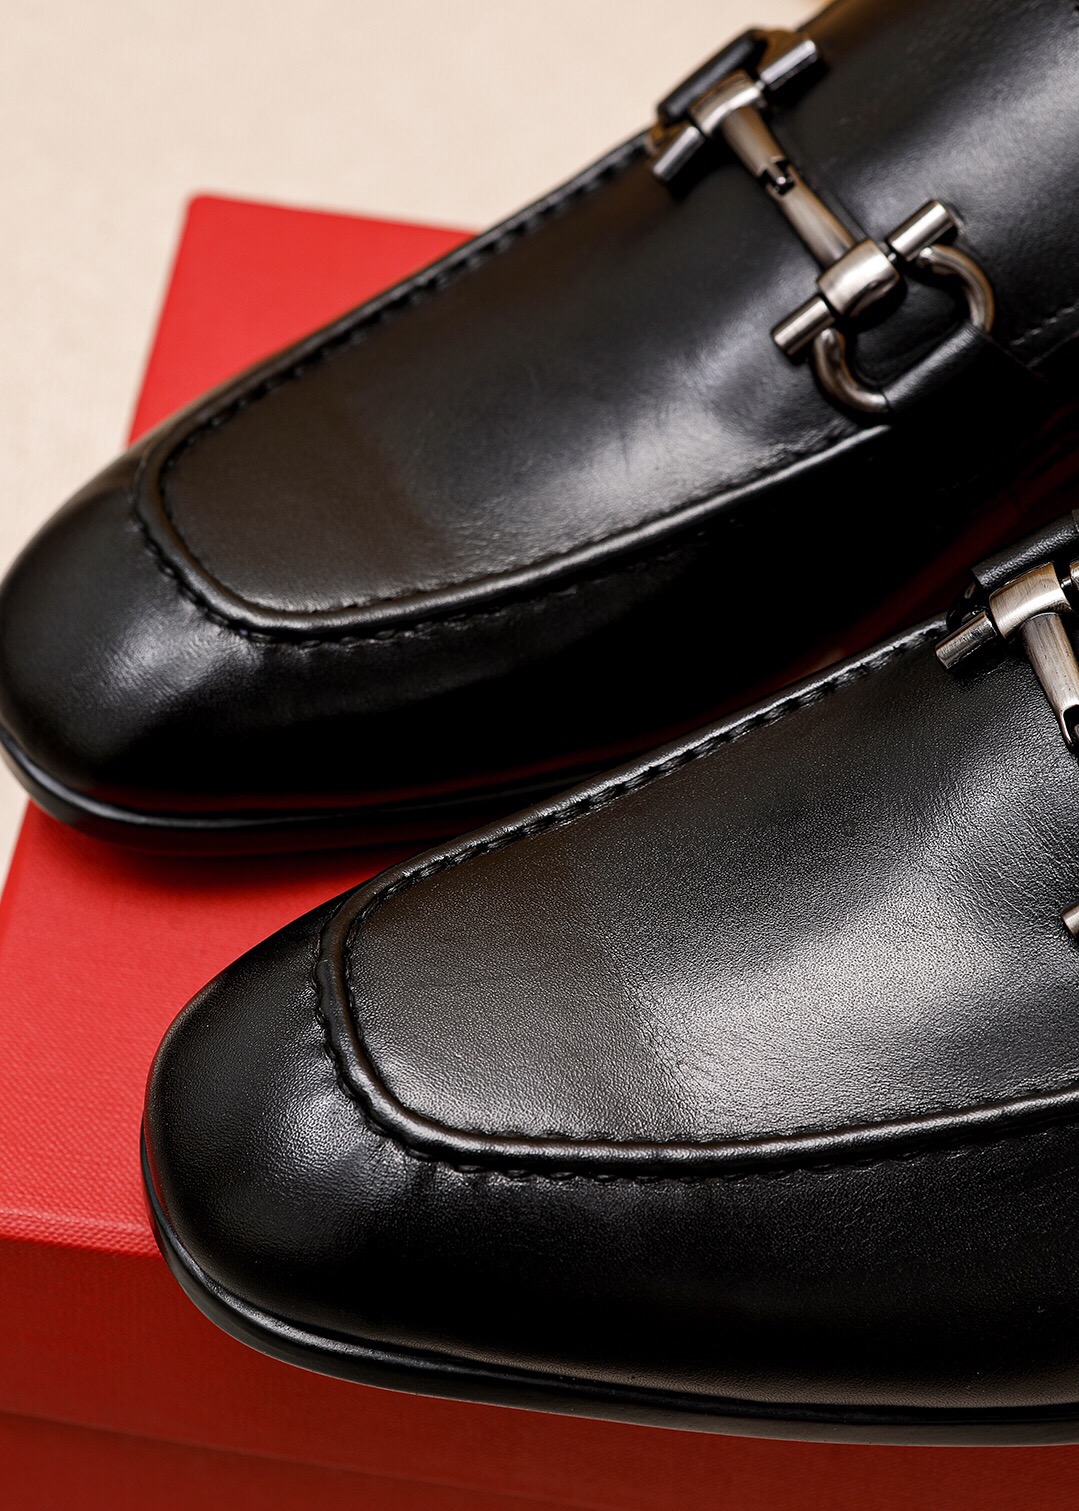 2023 رجل فستان أحذية جلد طبيعي Oxfords العلامة التجارية مصمم أحذية رجالي موضة أحذية البروغ عالية الجودة الأعمال الرسمي الشقق حجم 38-47